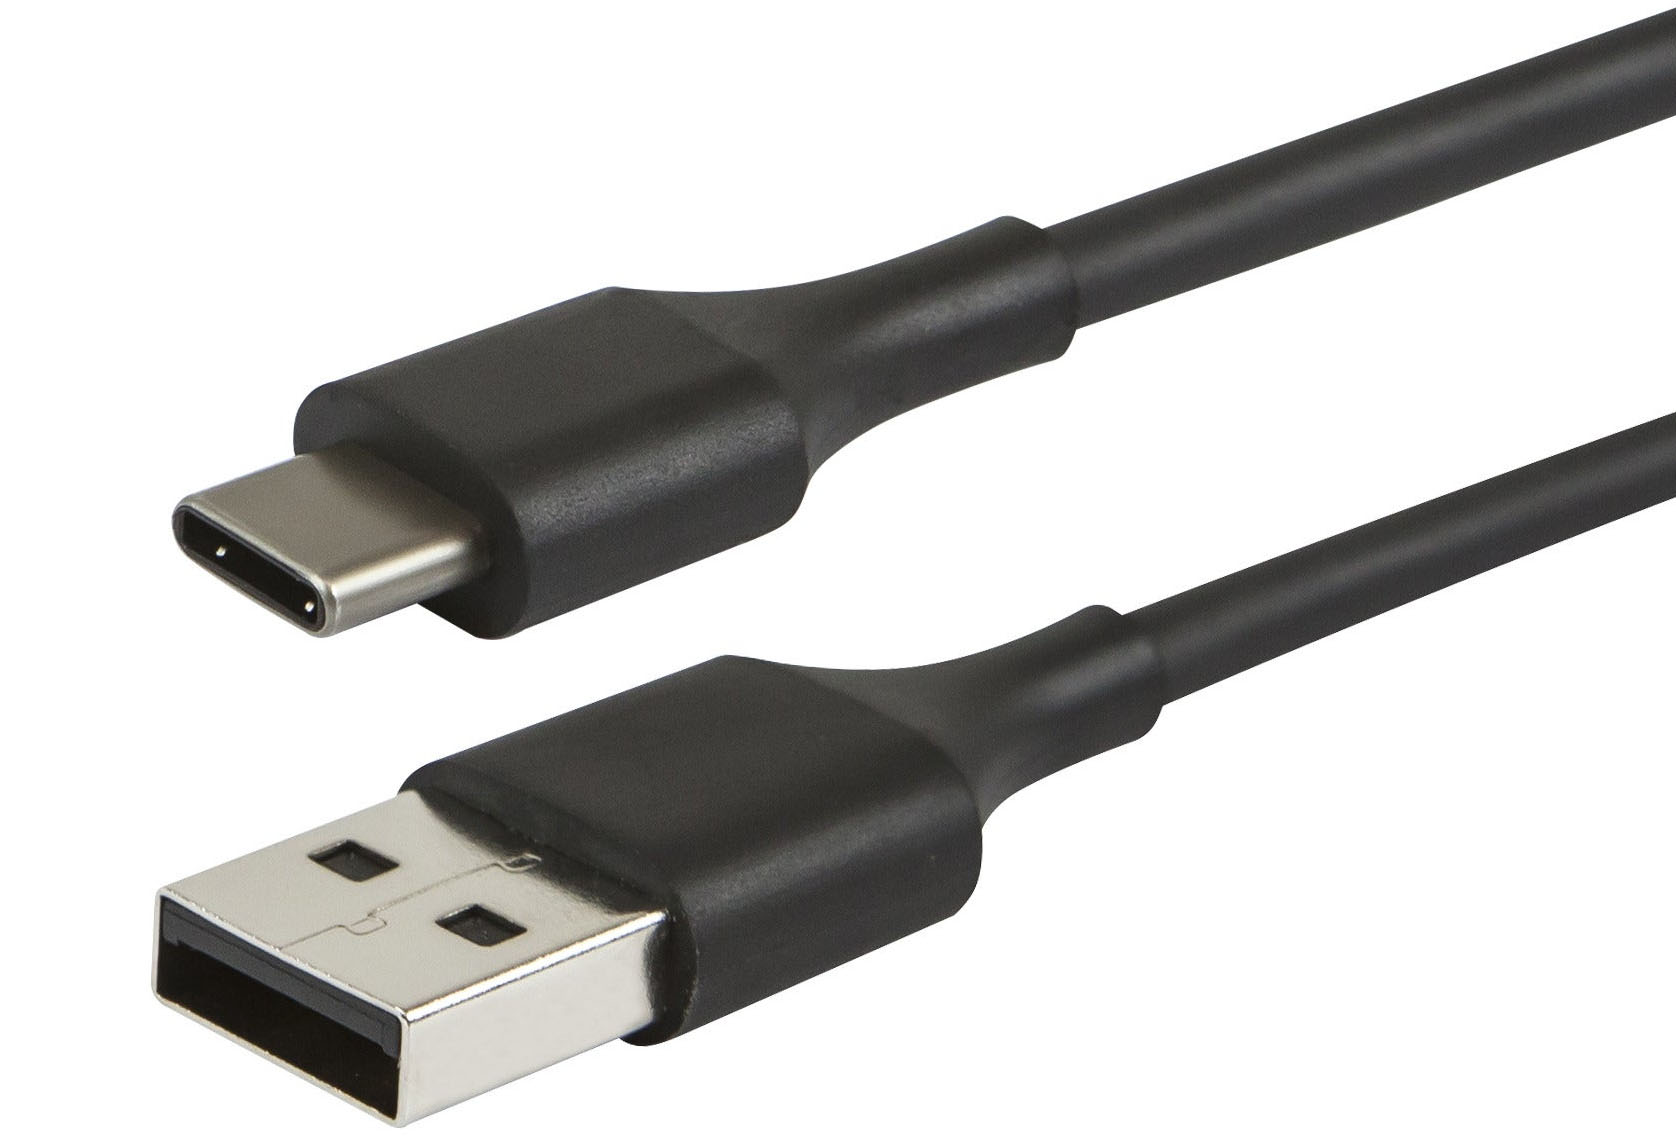 USB（通用串行总线）：您需要知道的一切